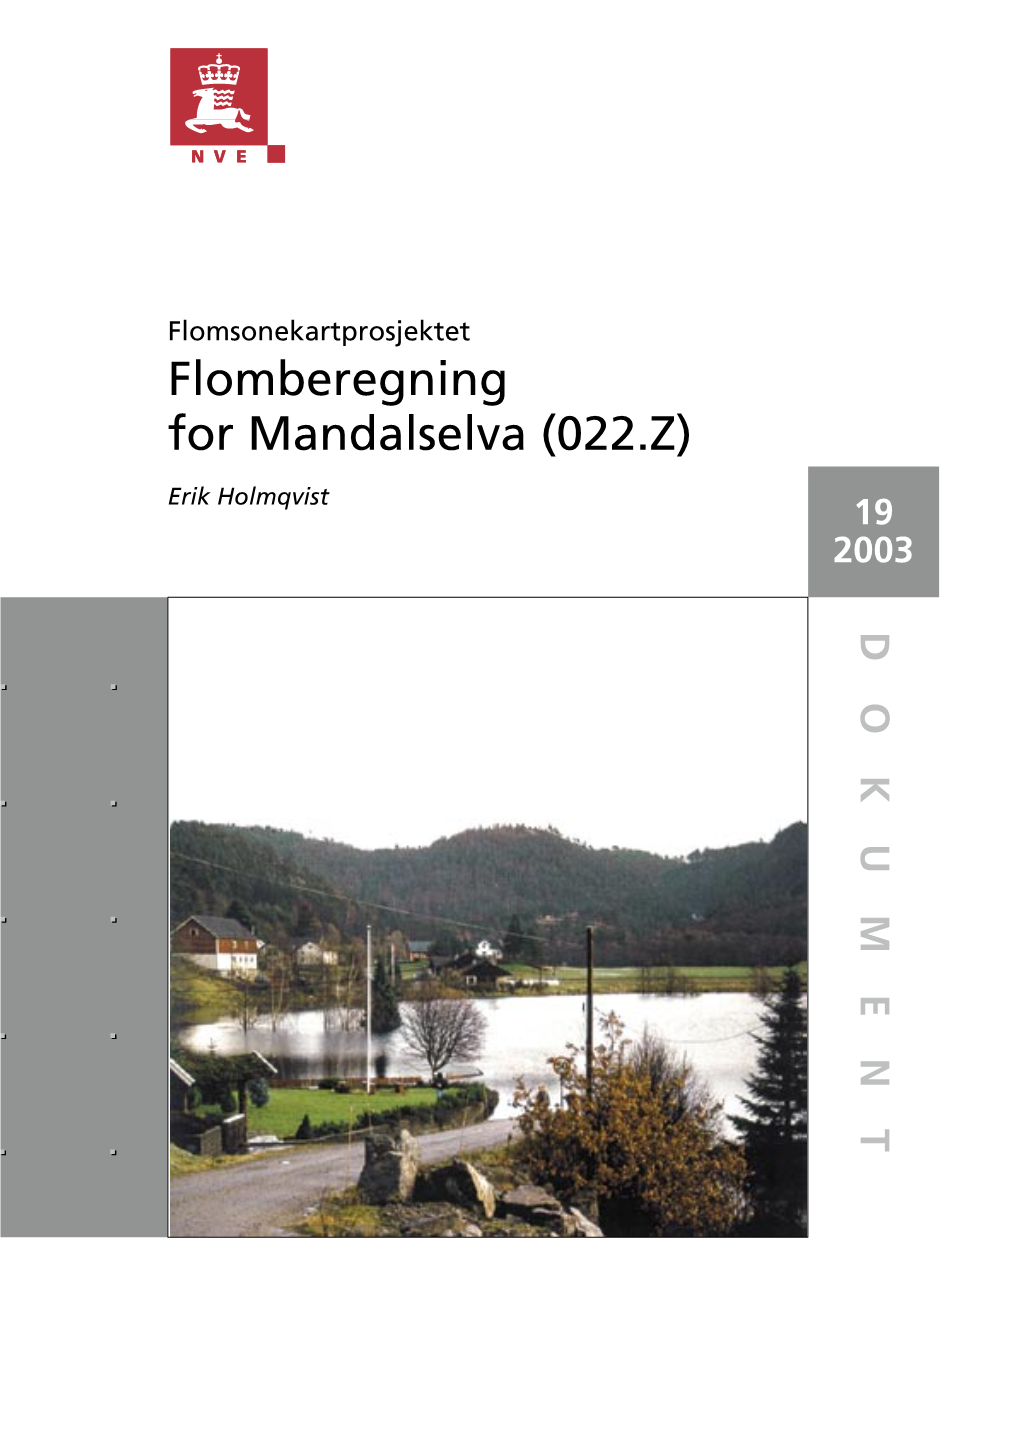 Flomberegning for Mandalselva (022.Z) Erik Holmqvist 19 2003 T N E M U K O D